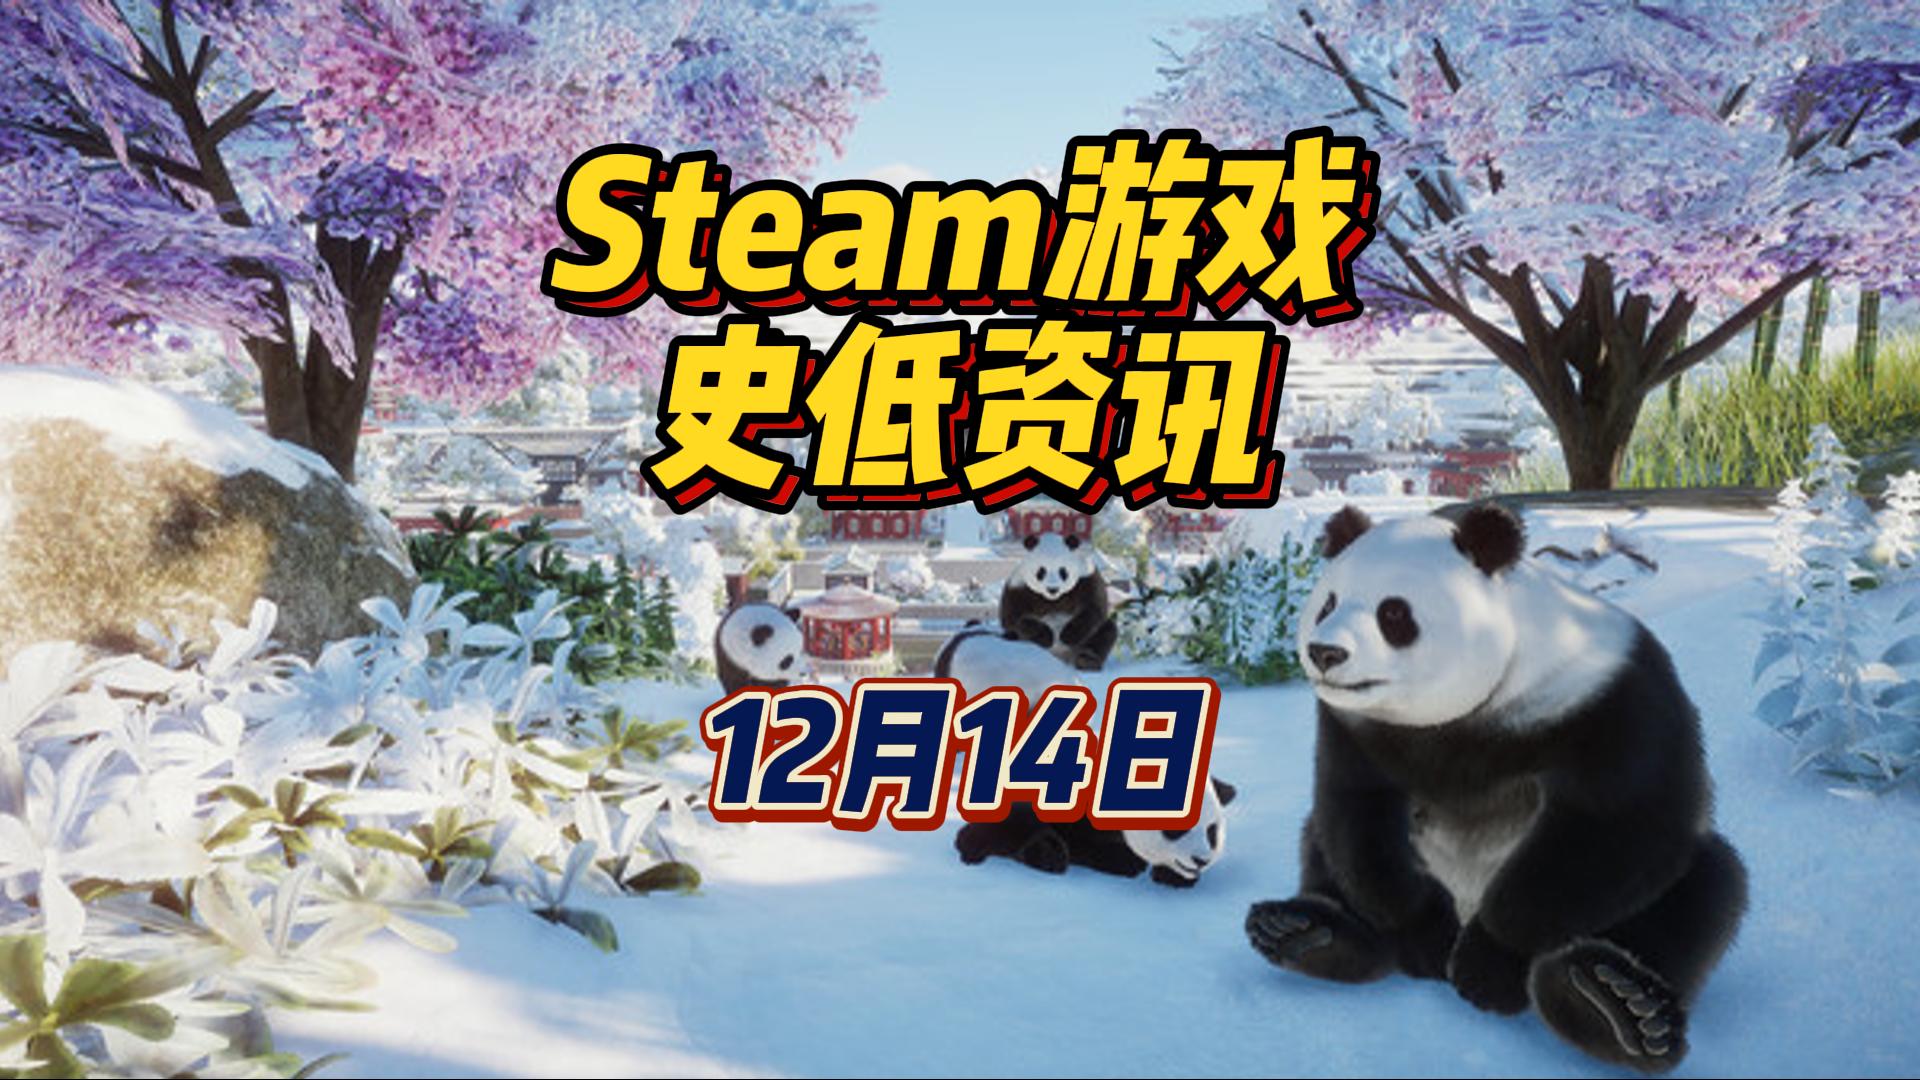 原子之心平史低，我在动物园里养熊猫，12 月 14 日 Steam 史低游戏